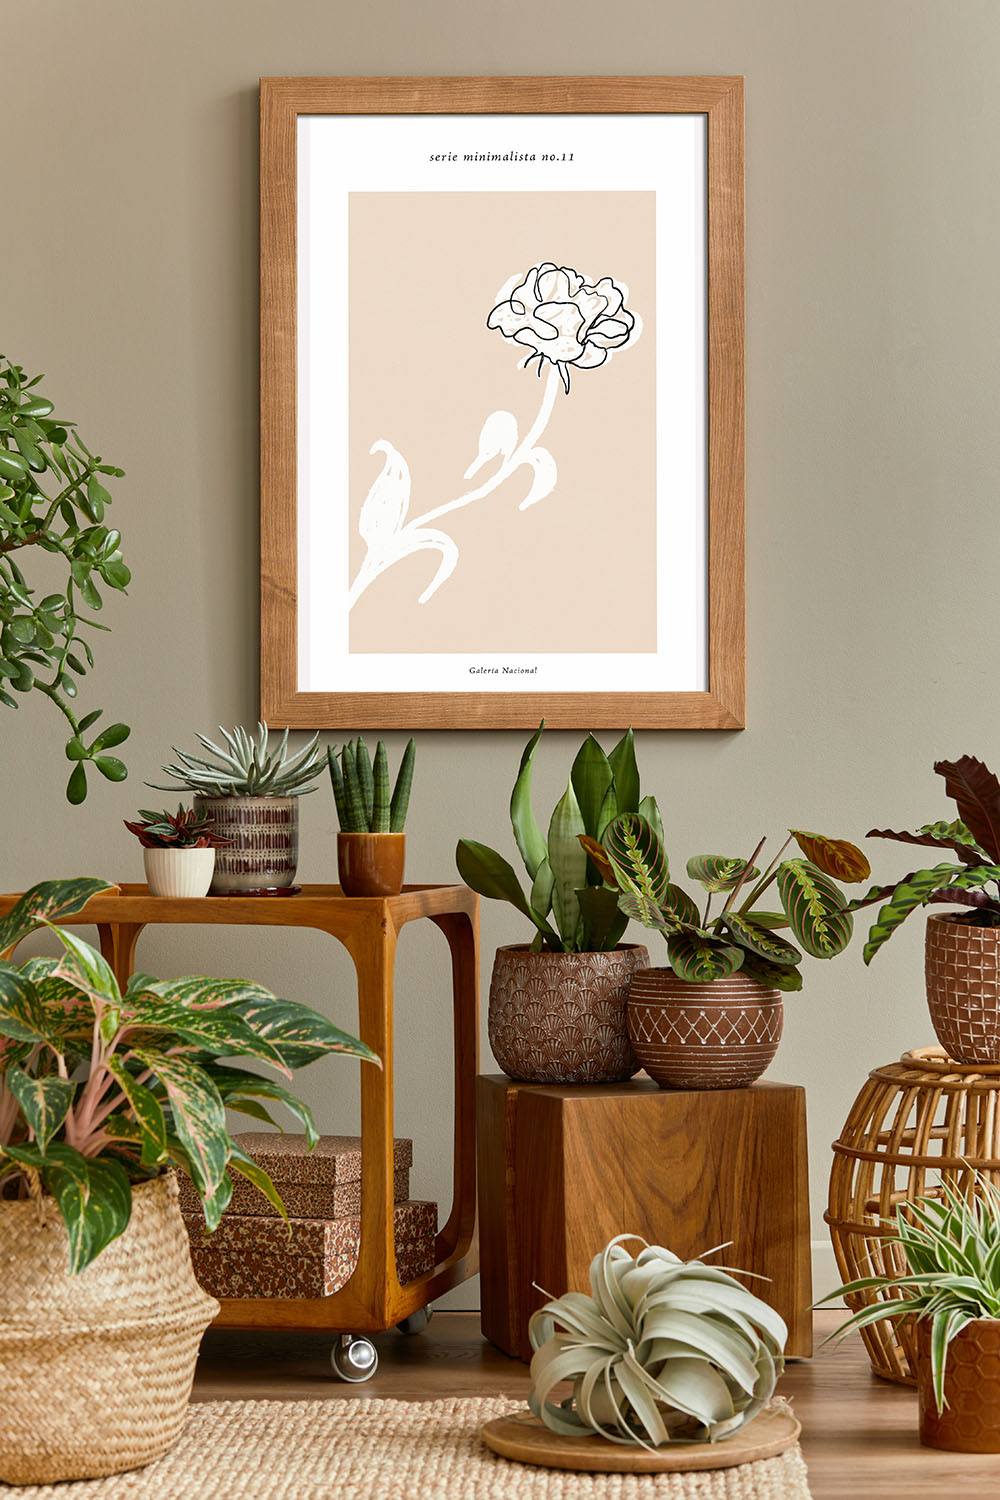 Bild einer Blume Serie minimalista no.11 Froilein Juno